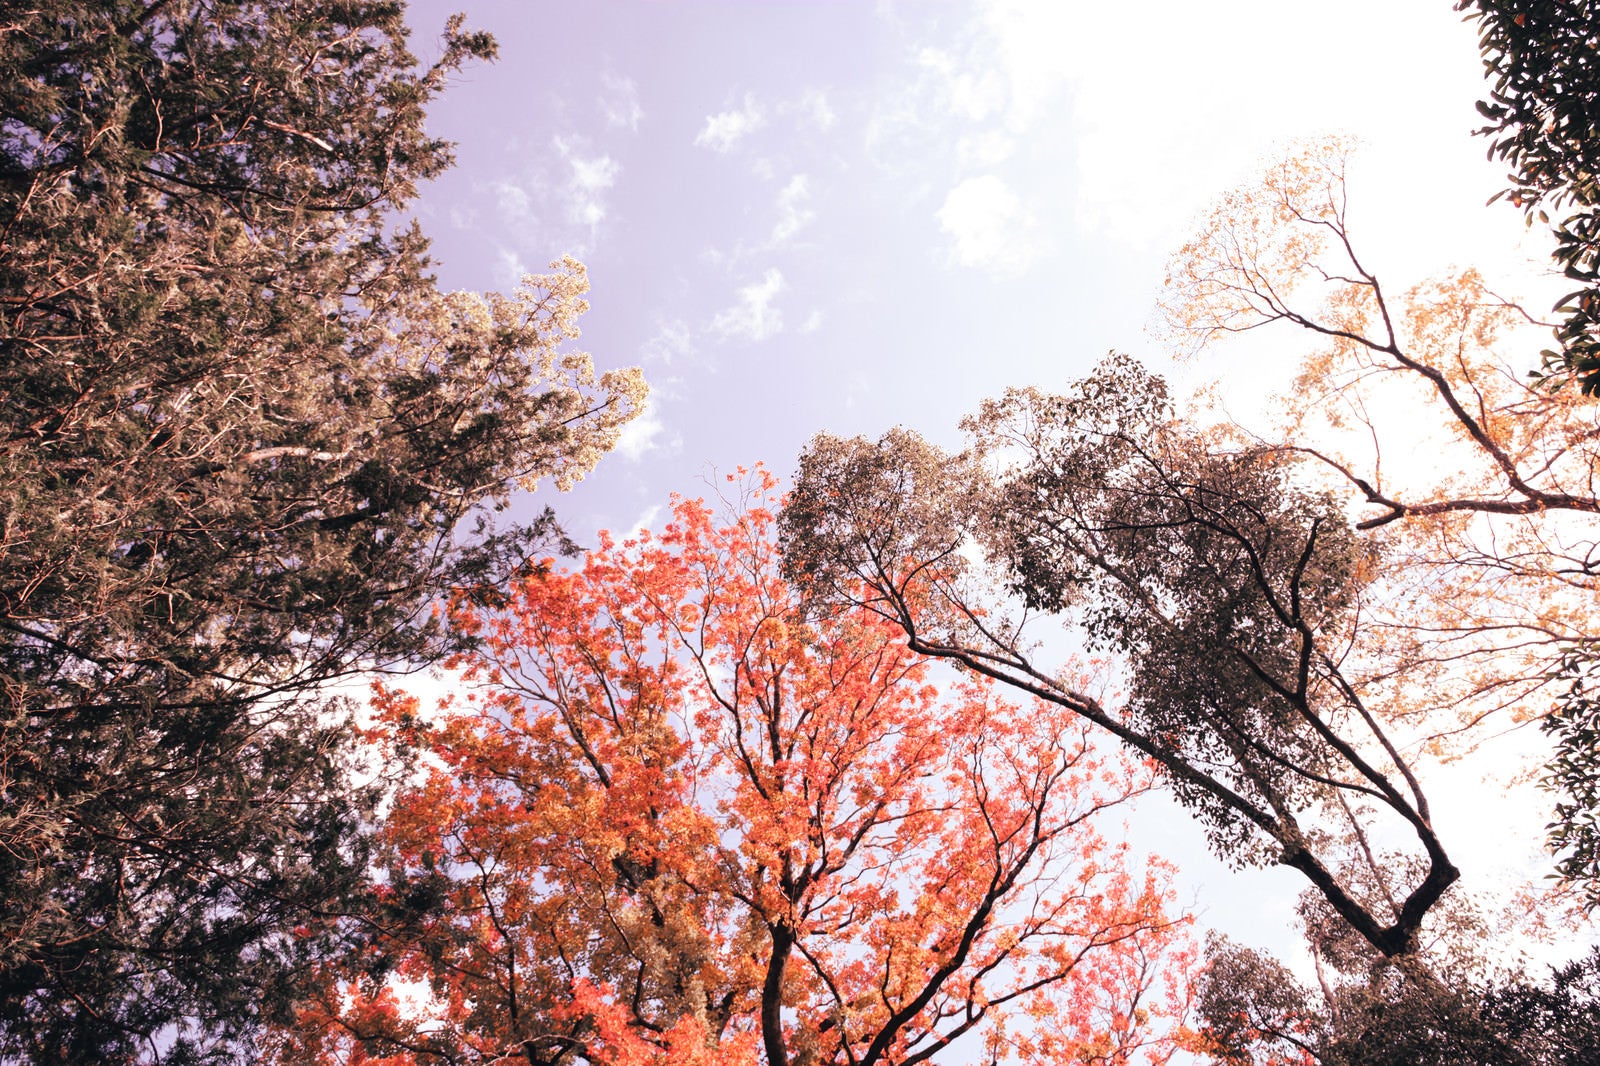 「紅葉した木々と青空」の写真